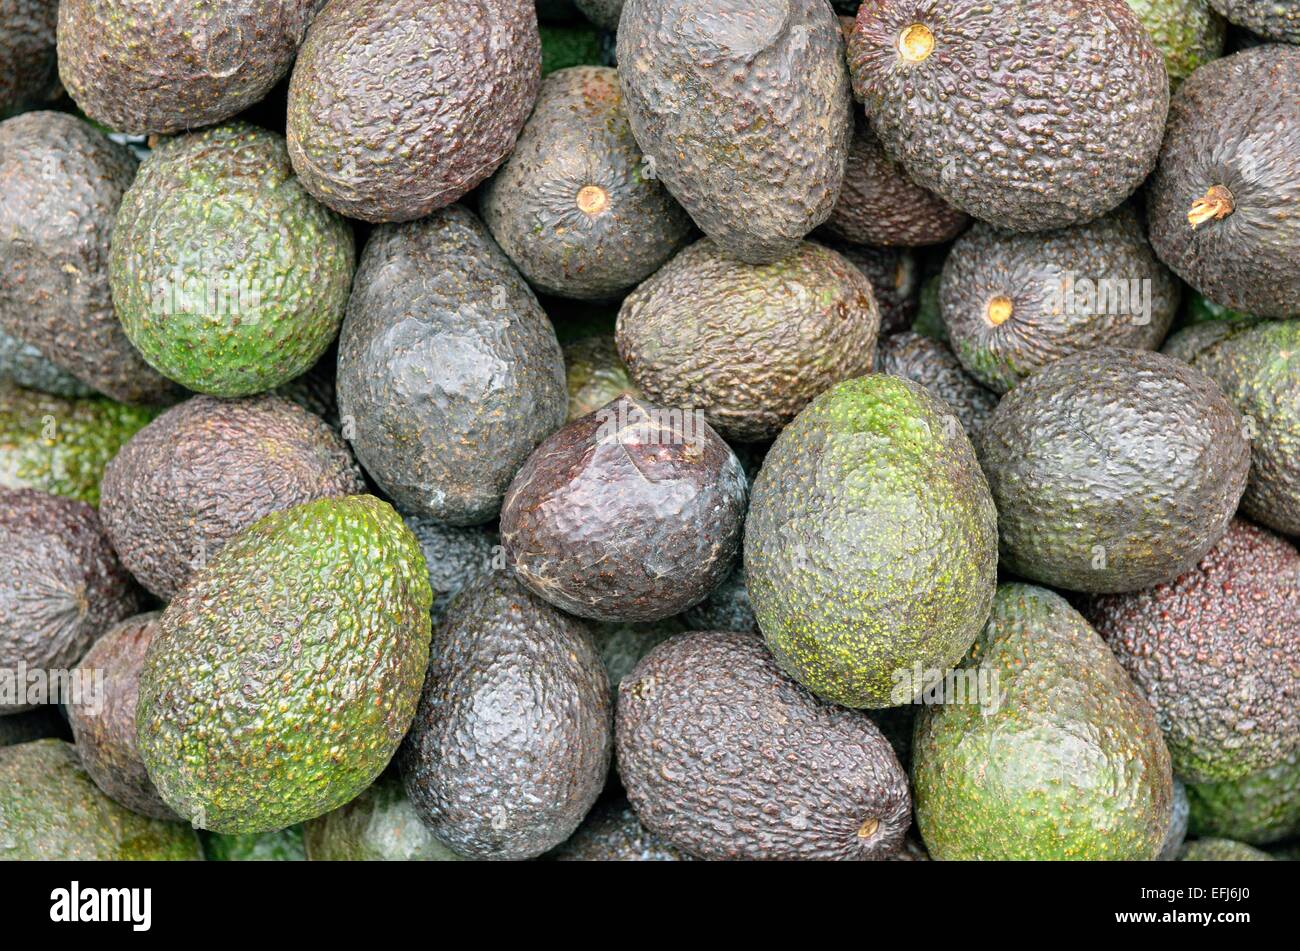 Avocados (Persea americana), Mexico Stock Photo